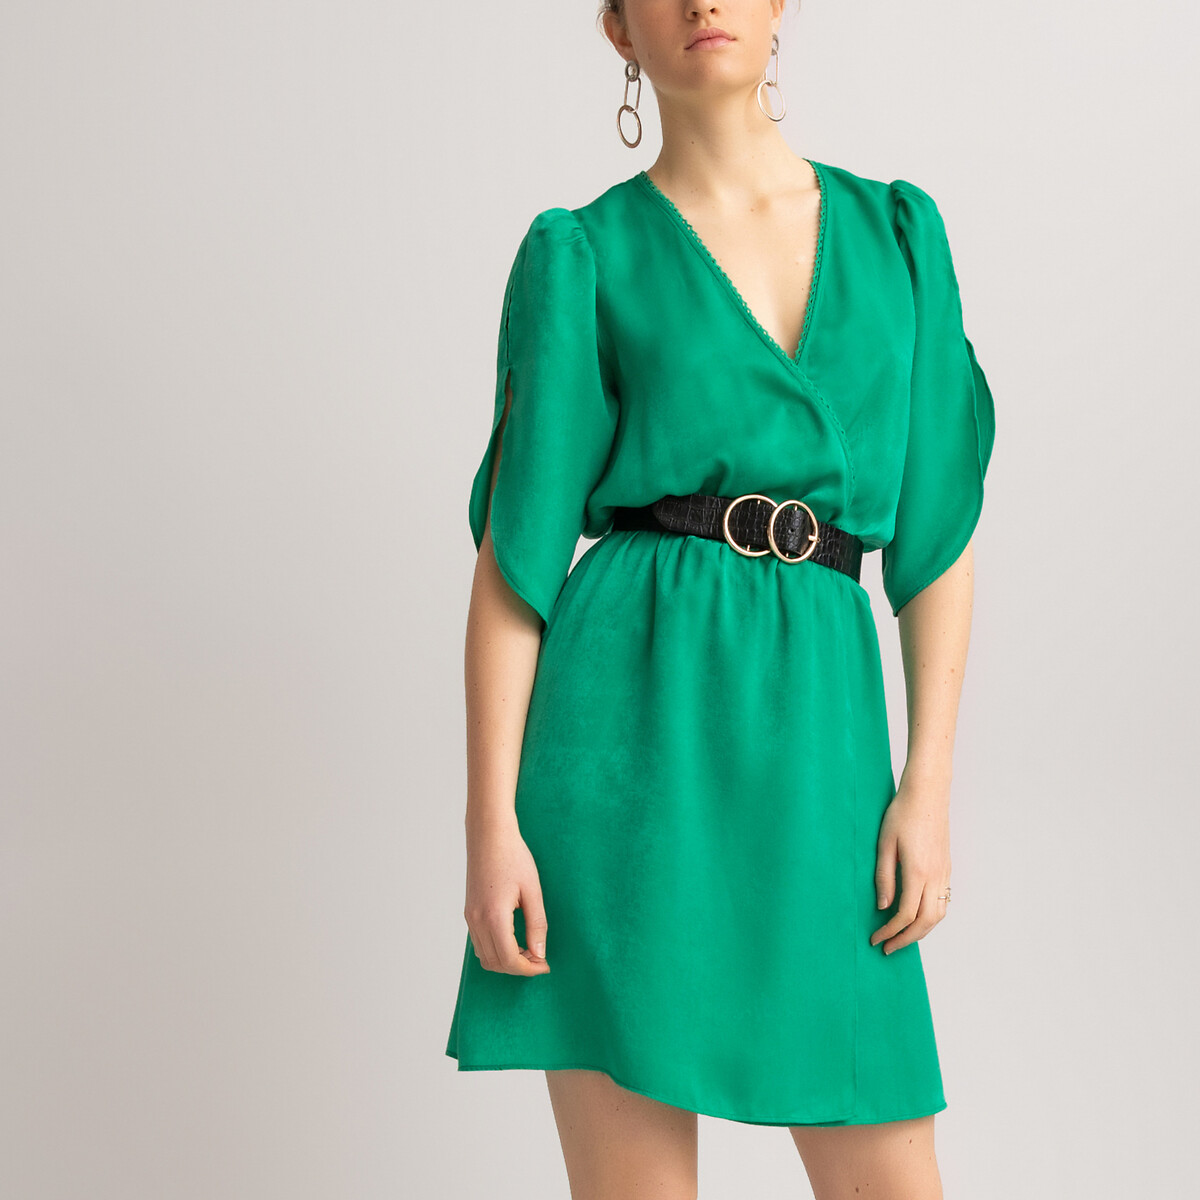 Платье LaRedoute Короткое с запахом короткие рукава 36 (FR) - 42 (RUS) зеленый, размер 36 (FR) - 42 (RUS) Короткое с запахом короткие рукава 36 (FR) - 42 (RUS) зеленый - фото 3